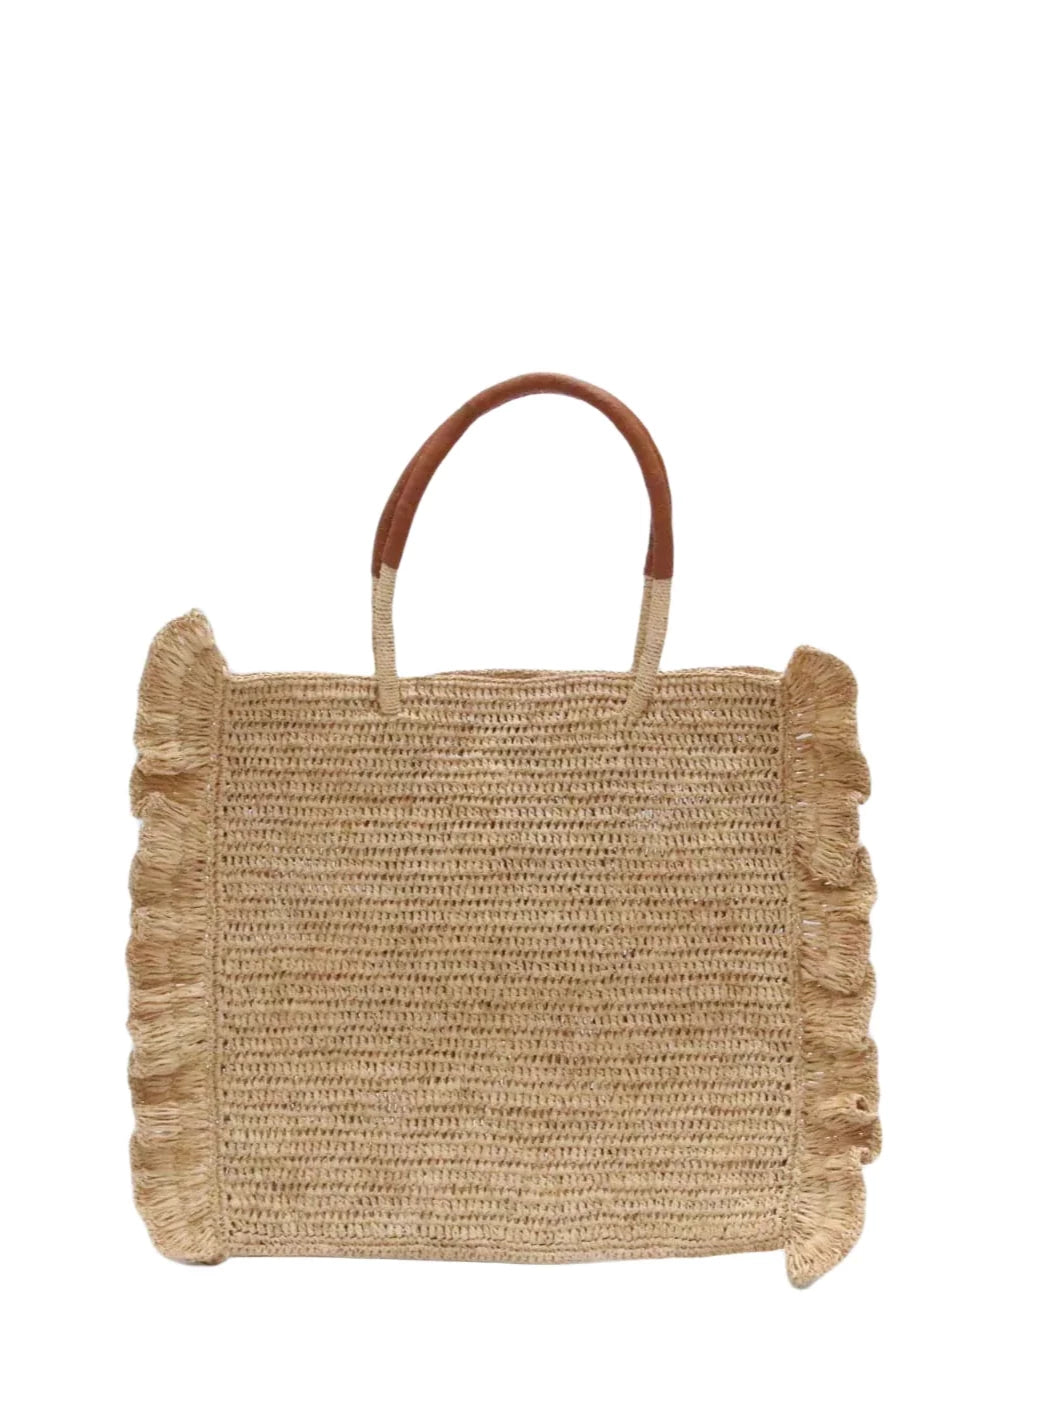 Maison N.H Paris Handbags - French Design – Lucette Collection